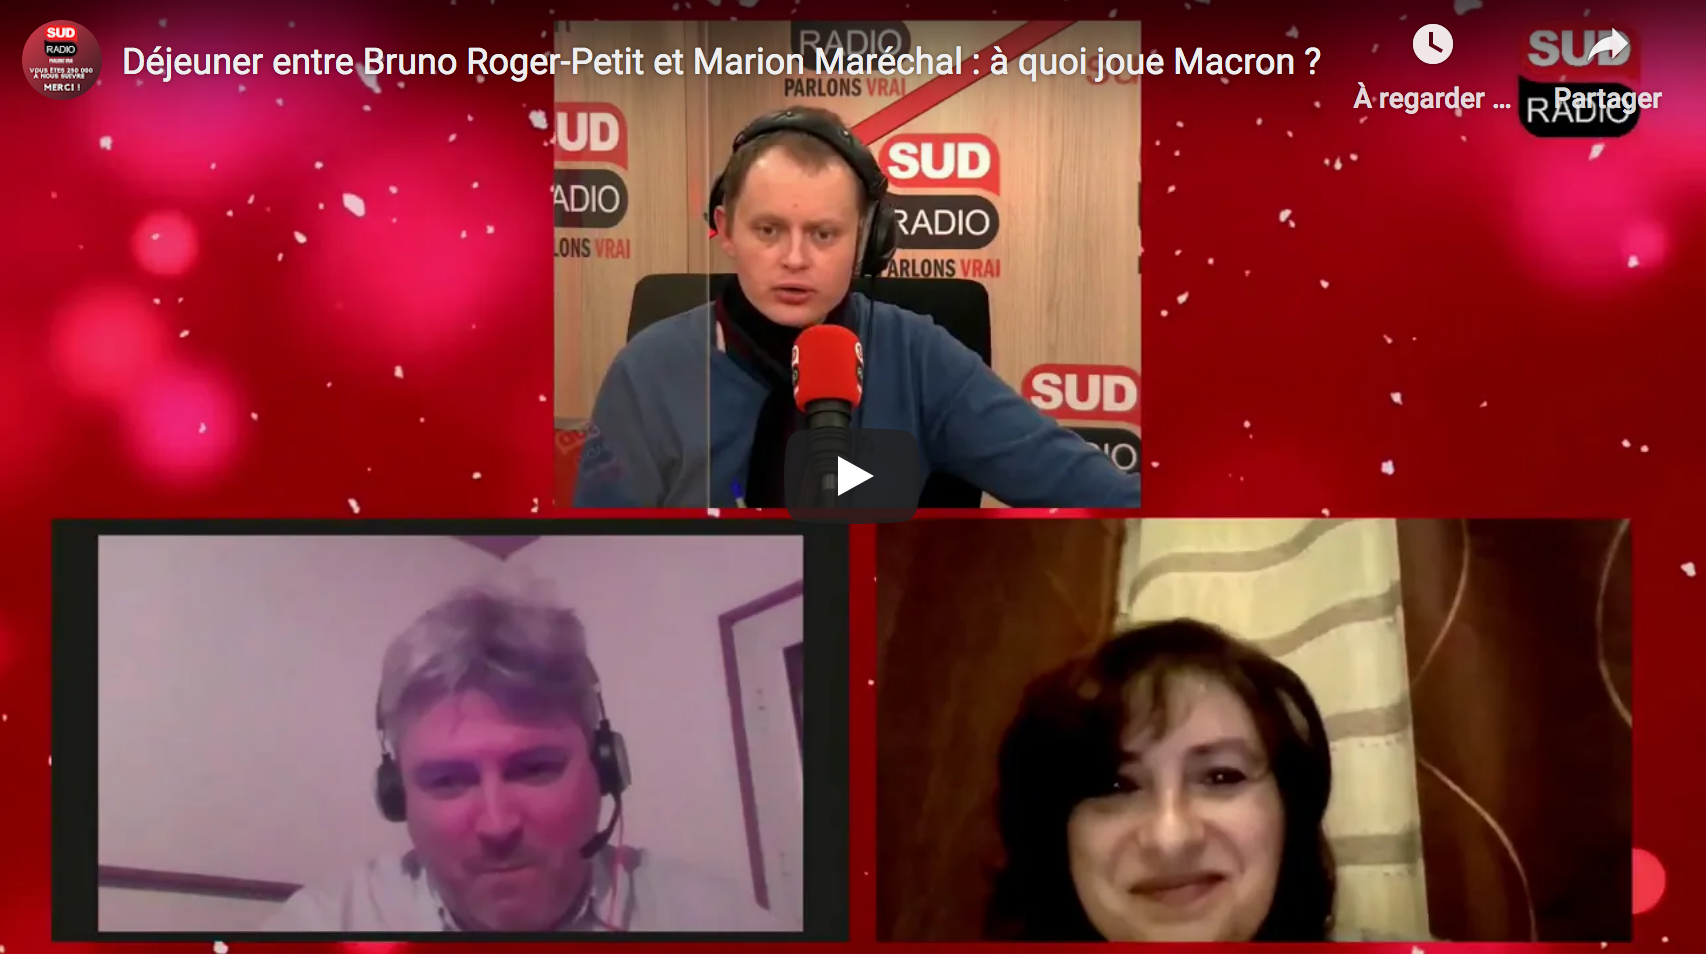 Déjeuner entre Bruno Roger-Petit et Marion Maréchal : à quoi joue Emmanuel Macron ?